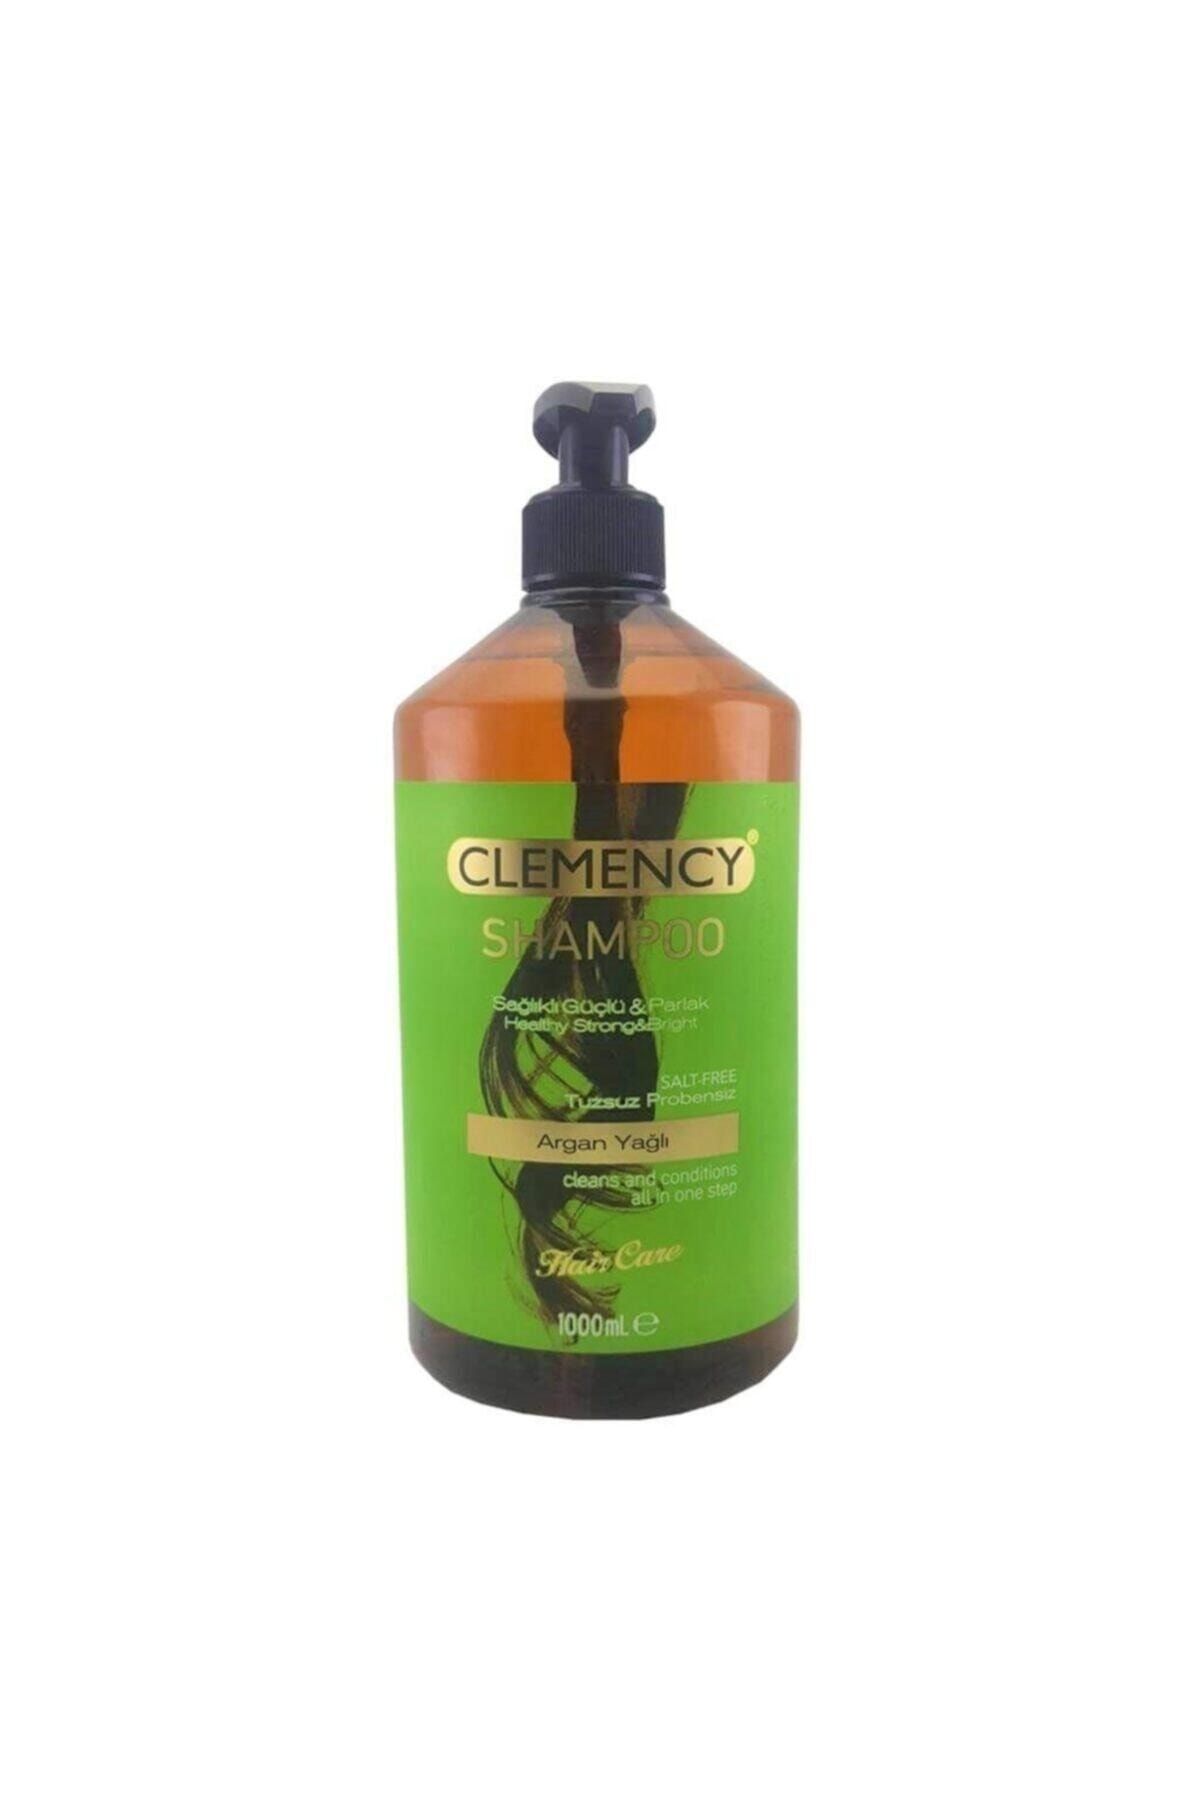 Clemency Argan Yagı Içerikli Tuzsuz Arganlı Şampuan 1000ml